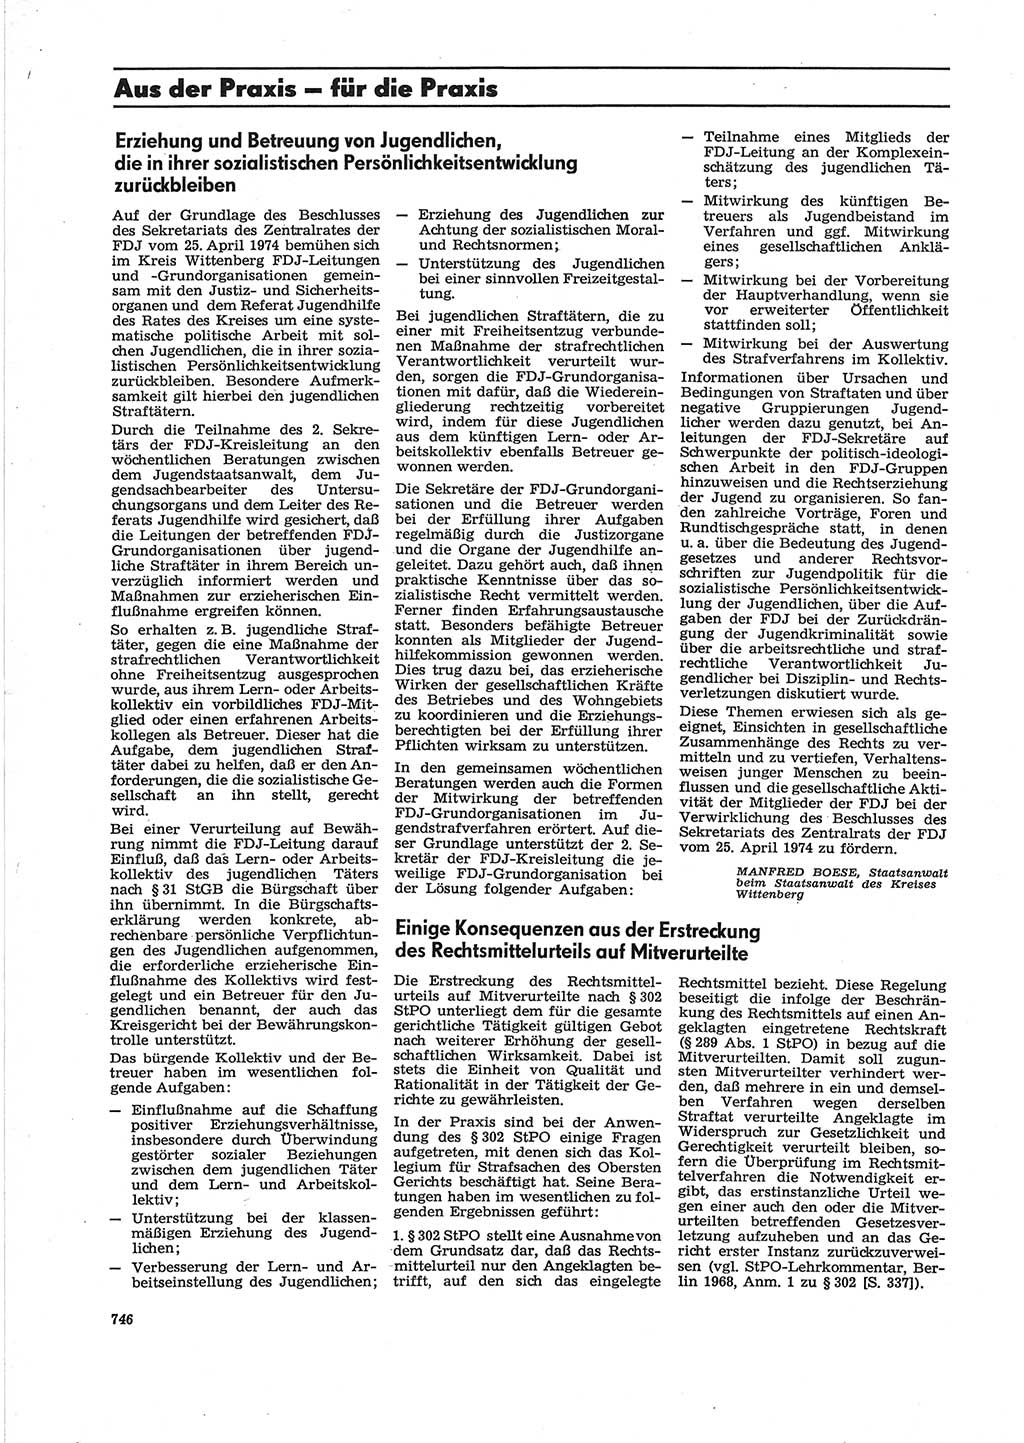 Neue Justiz (NJ), Zeitschrift für Recht und Rechtswissenschaft [Deutsche Demokratische Republik (DDR)], 28. Jahrgang 1974, Seite 746 (NJ DDR 1974, S. 746)